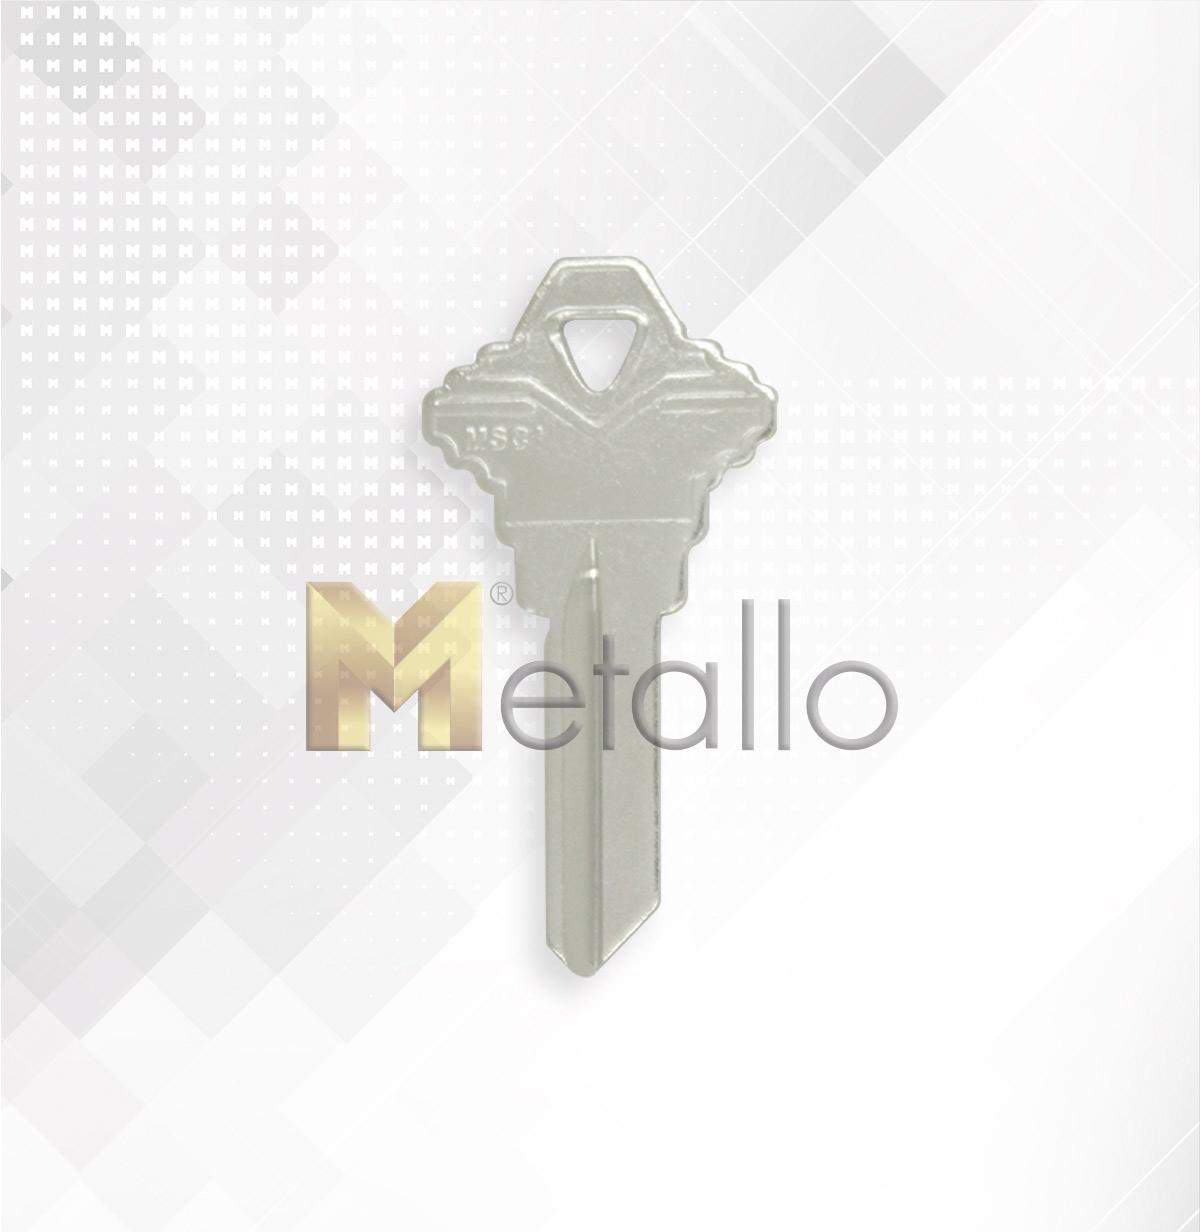 METALLO MSC1 S6 LLAVE RESIDENCIAL 